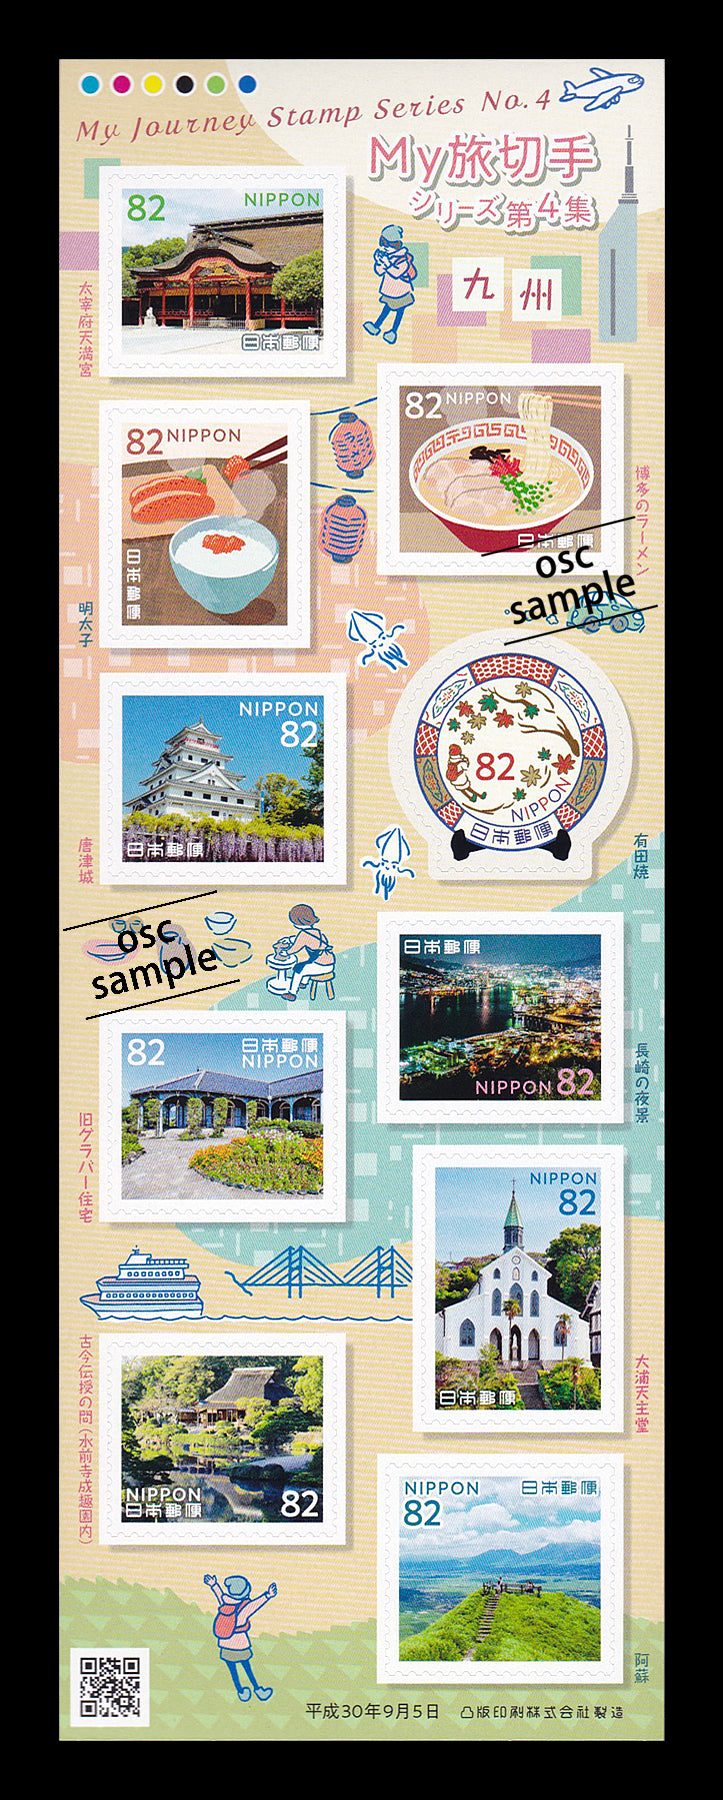 Kyushu (My Journey Stamp Series No.4) 九州 (82 yen)